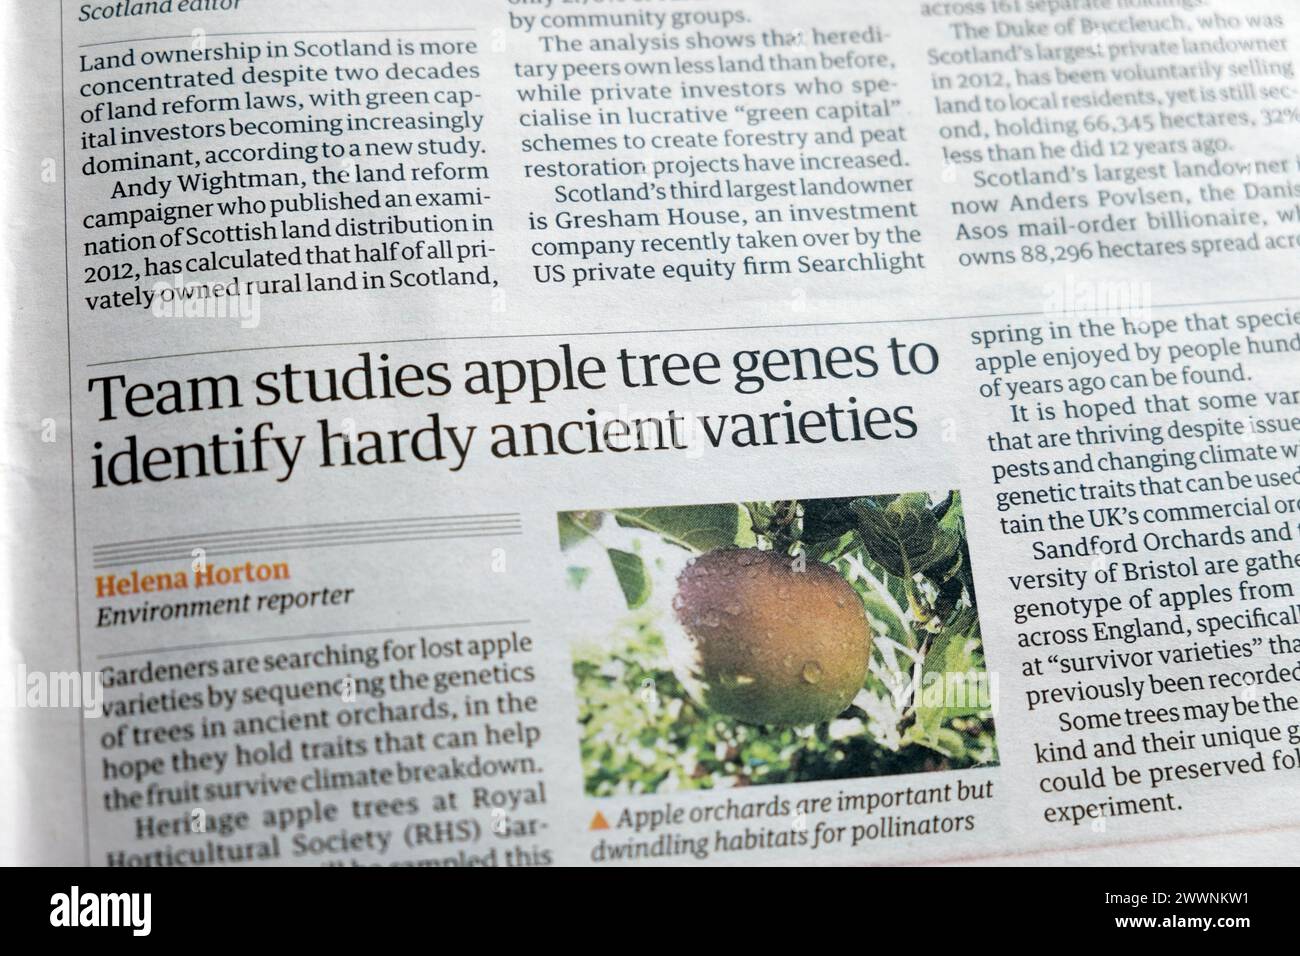 "Il team studia i geni degli alberi di mele per identificare le varietà antiche e resistenti" articolo del quotidiano Guardian sulle mele Foto Stock